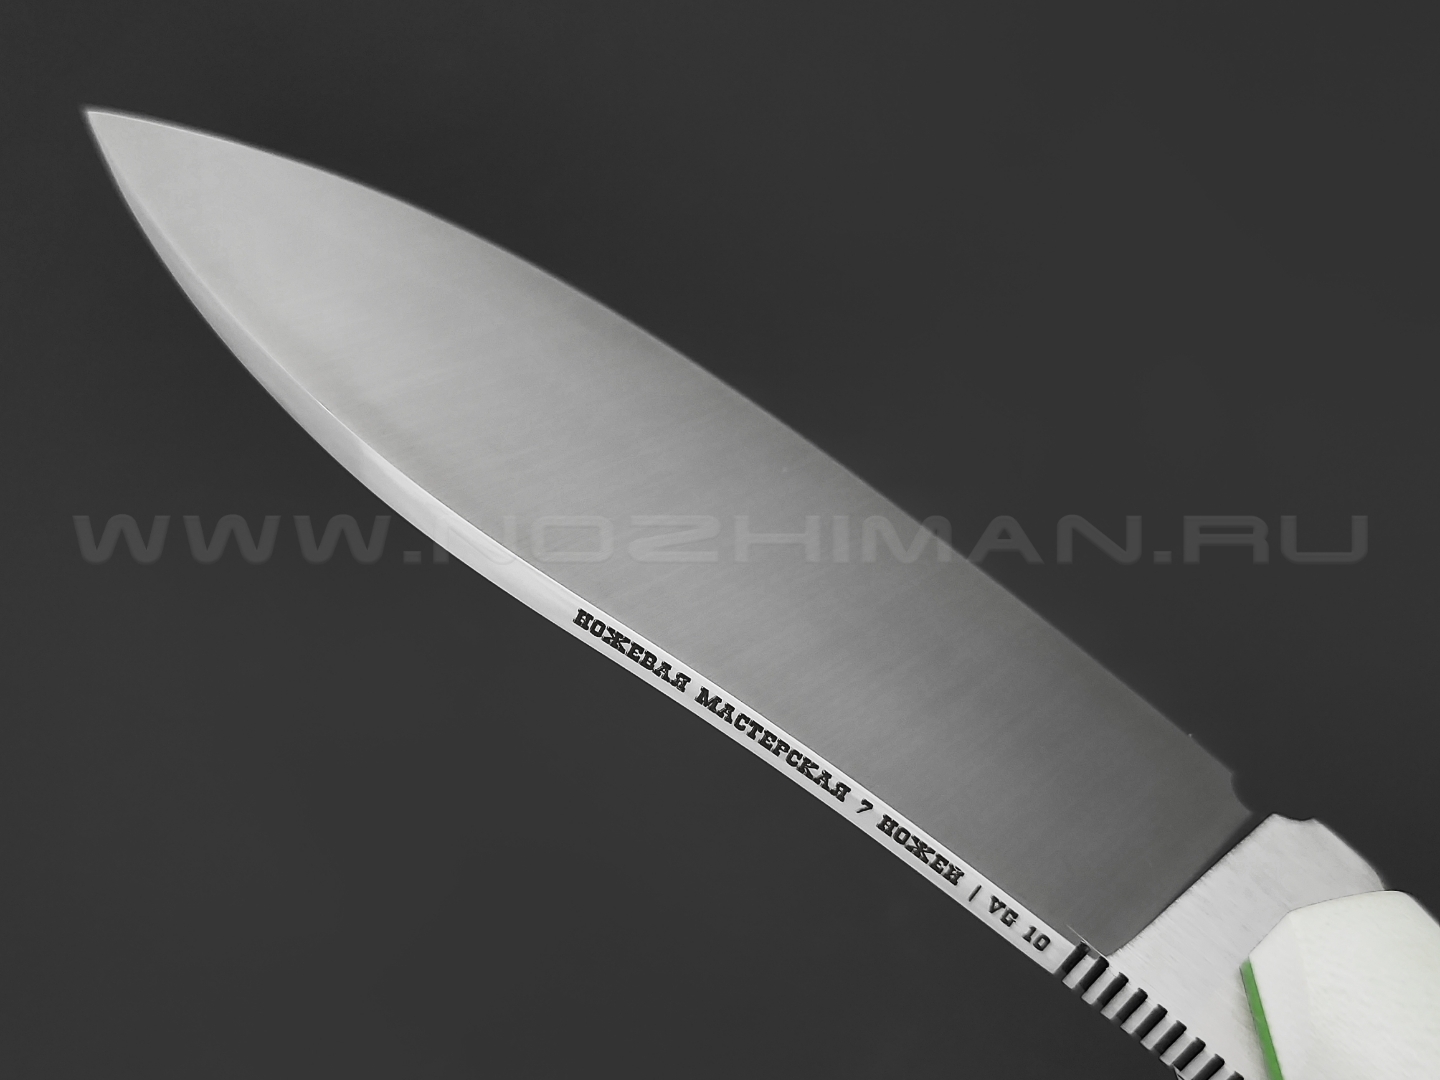 7 ножей нож Нессмук сталь VG-10 satin, рукоять G10 white & green